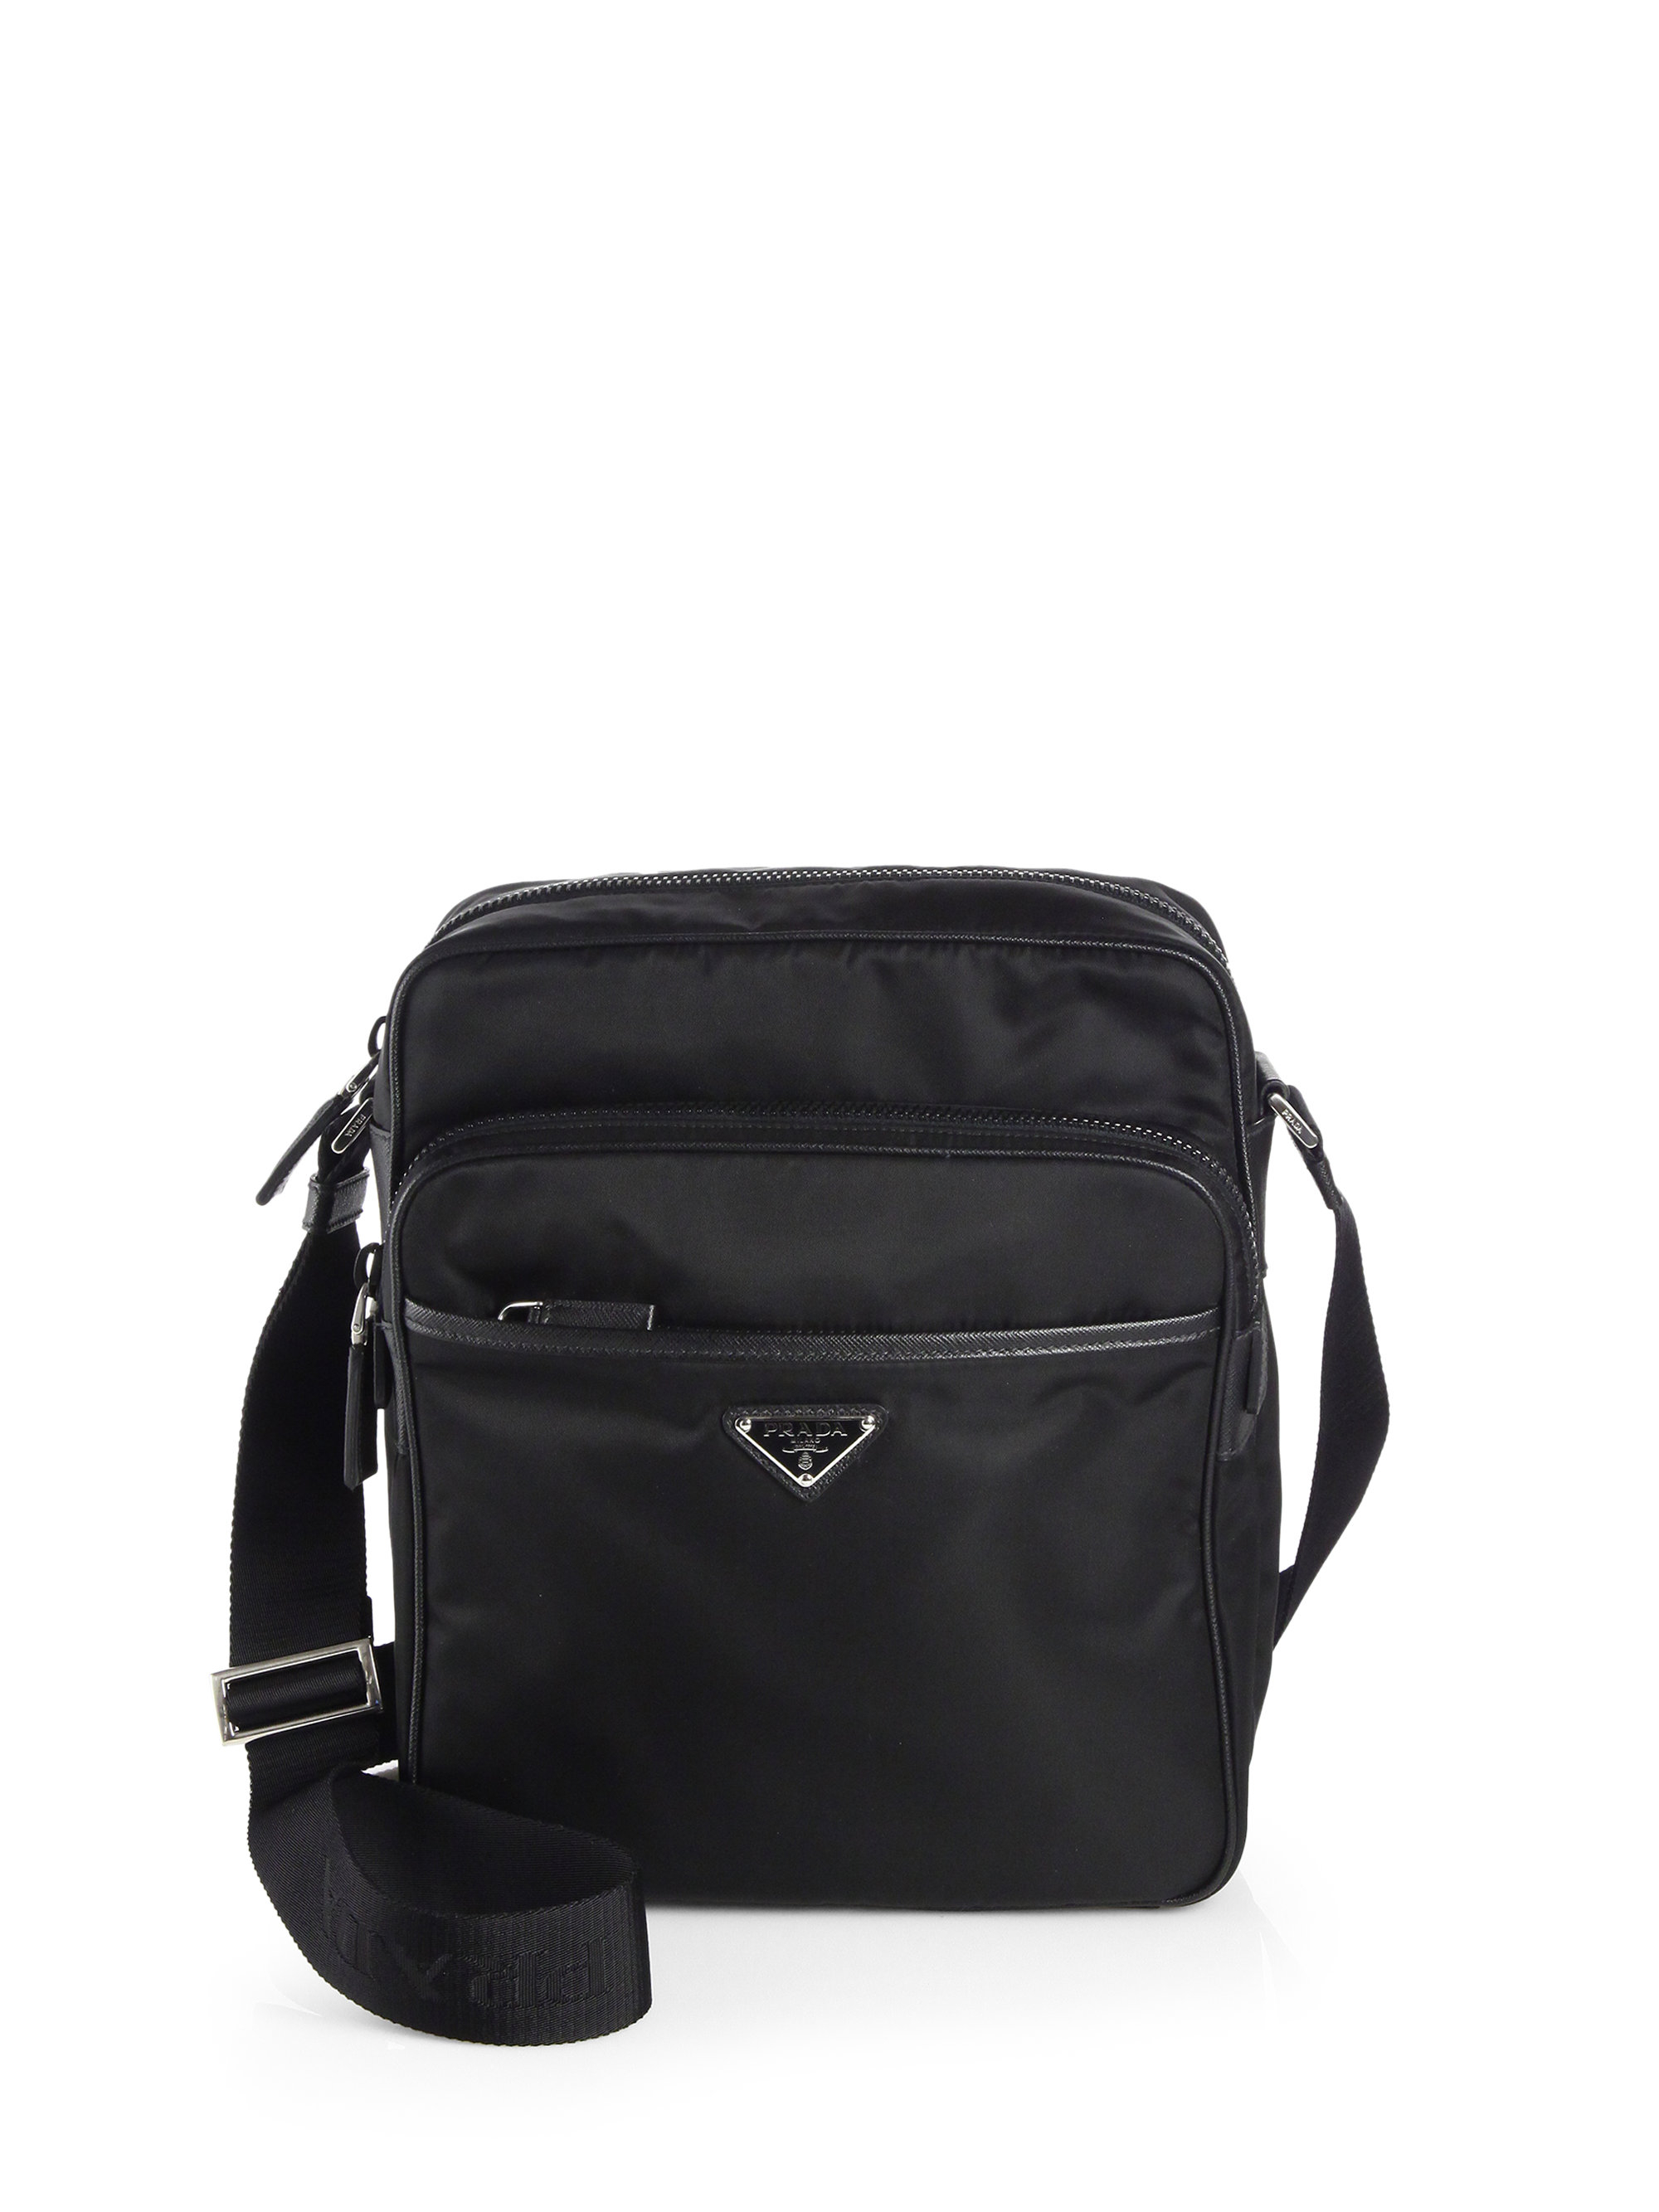 Lyst - Prada Nylon Camera Bag in Black for Men